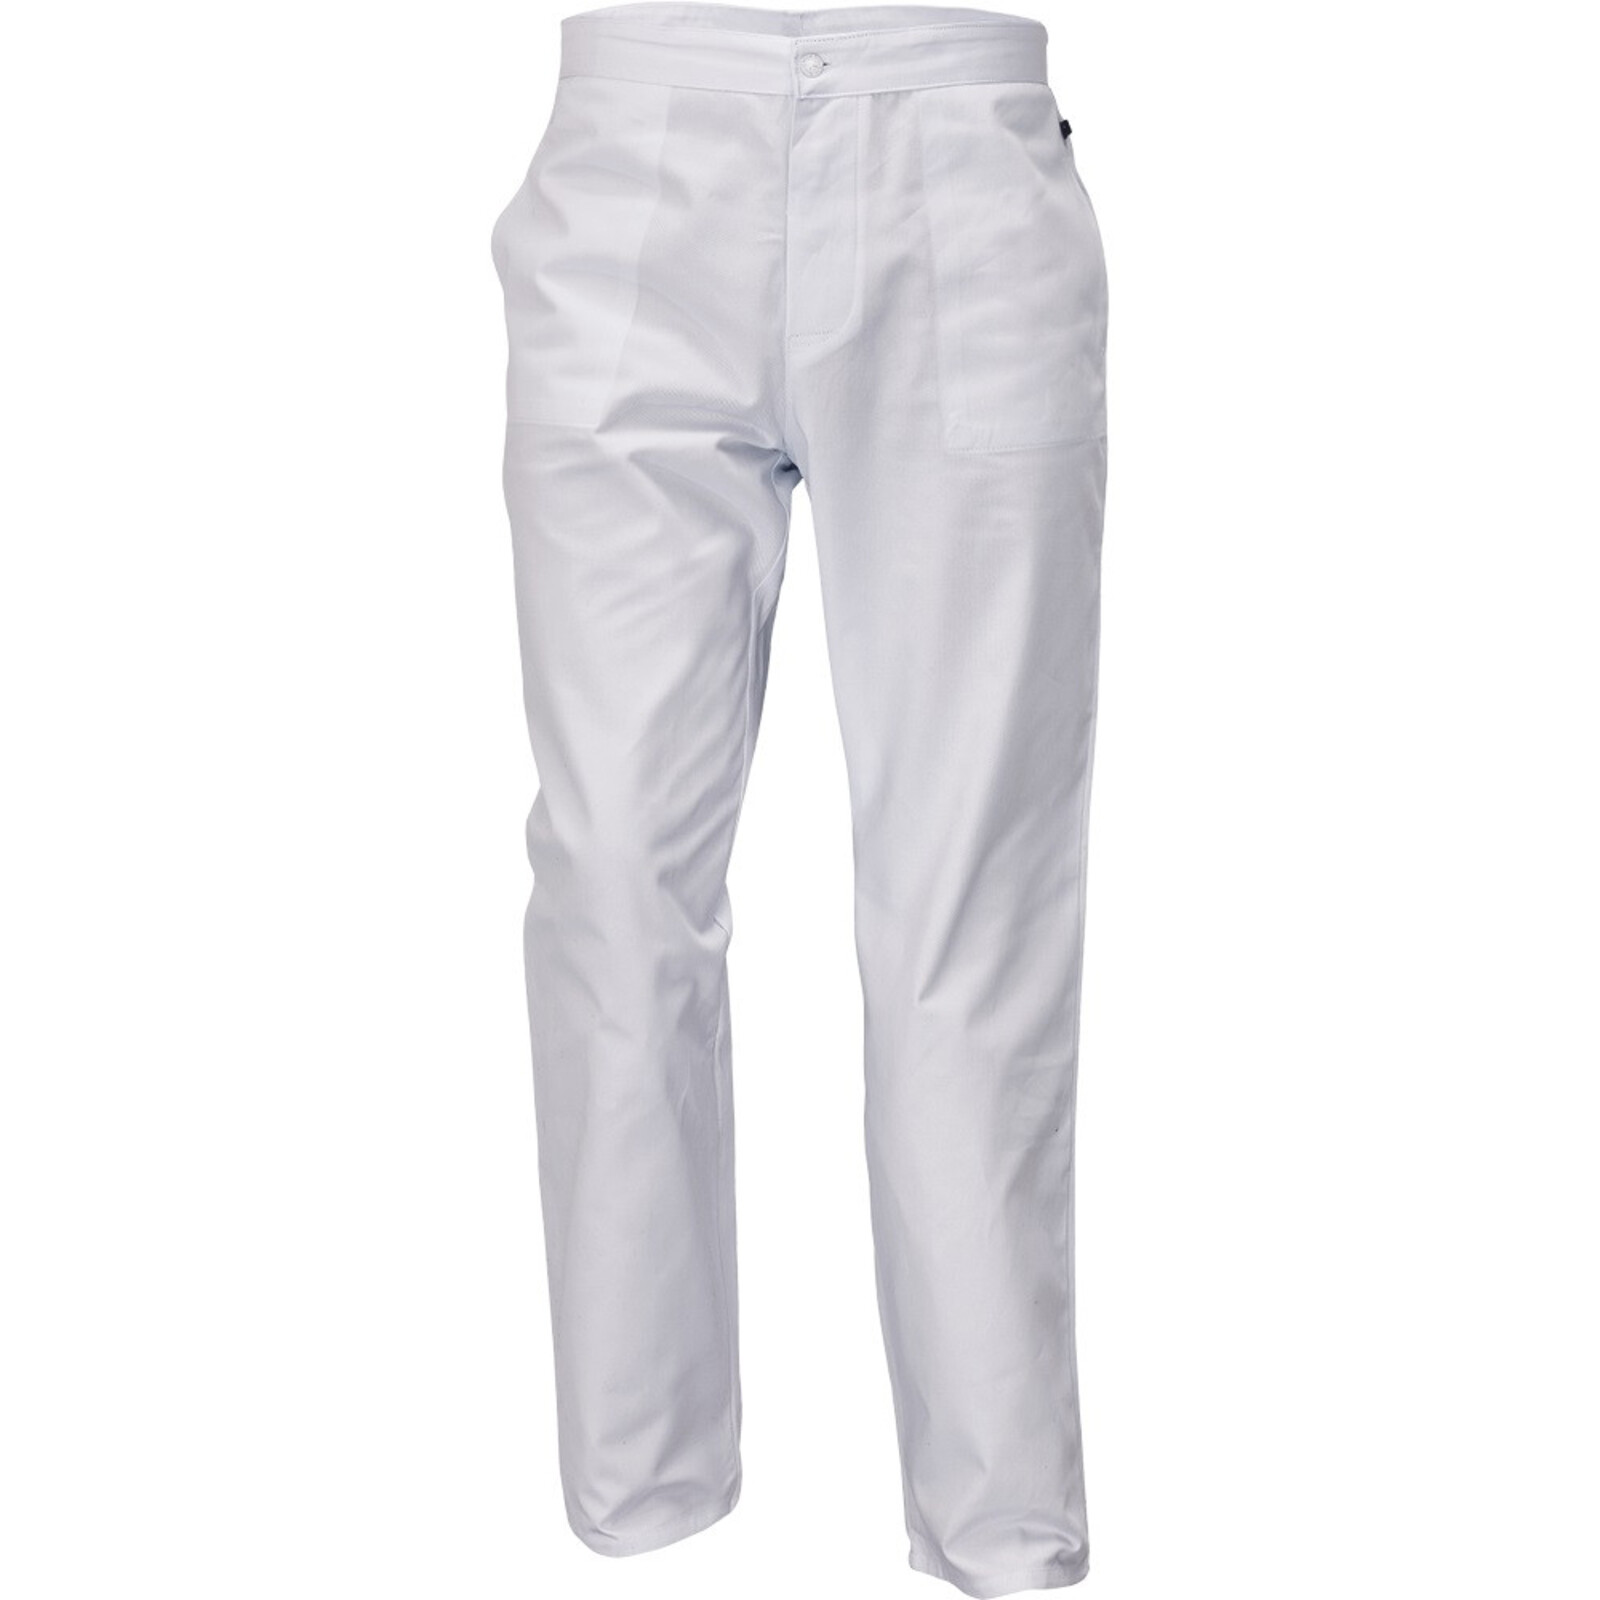 Pánske biele nohavice Apus Man - veľkosť: 50